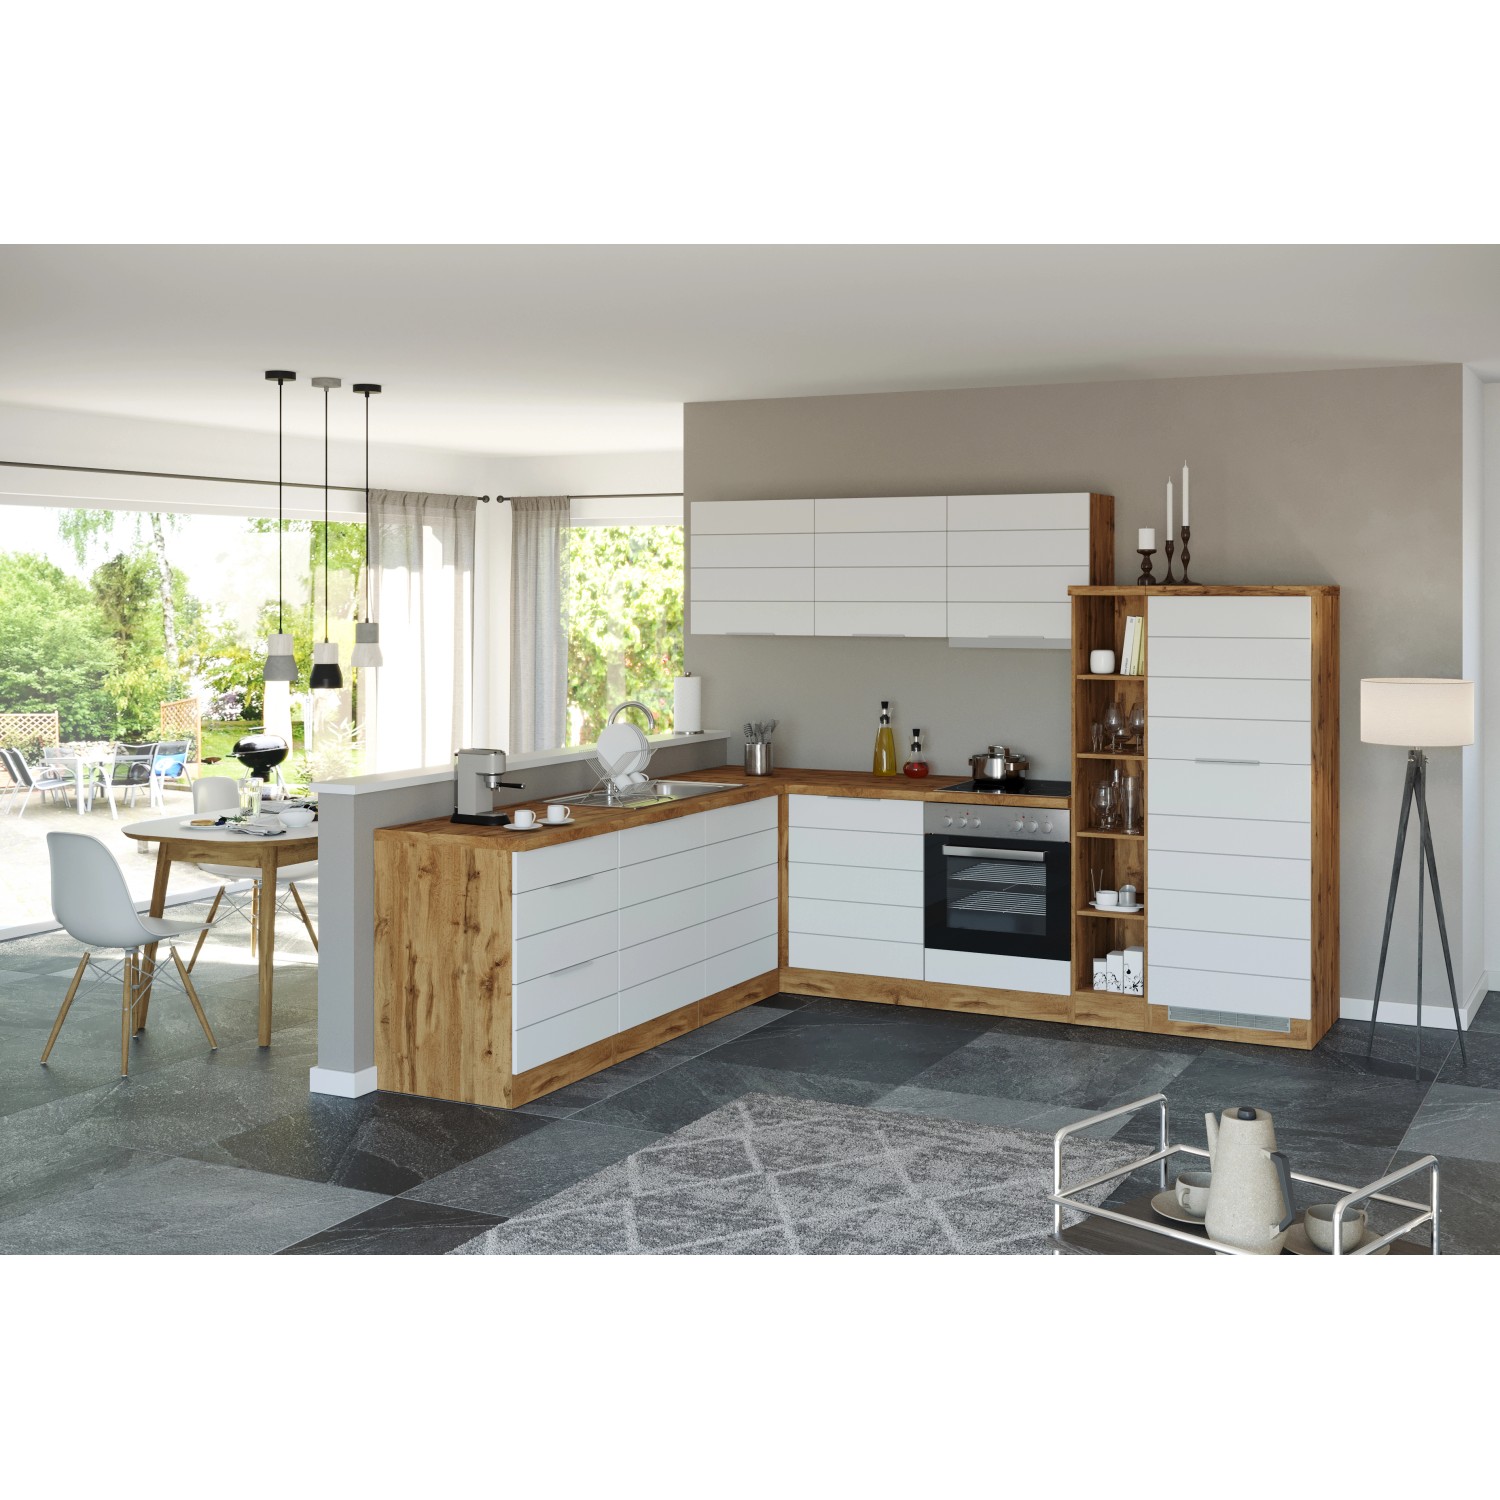 Held Möbel Winkelküche 240 cm - 270 cm Matt Weiß-Wotaneiche ohne E-Geräte  kaufen bei OBI